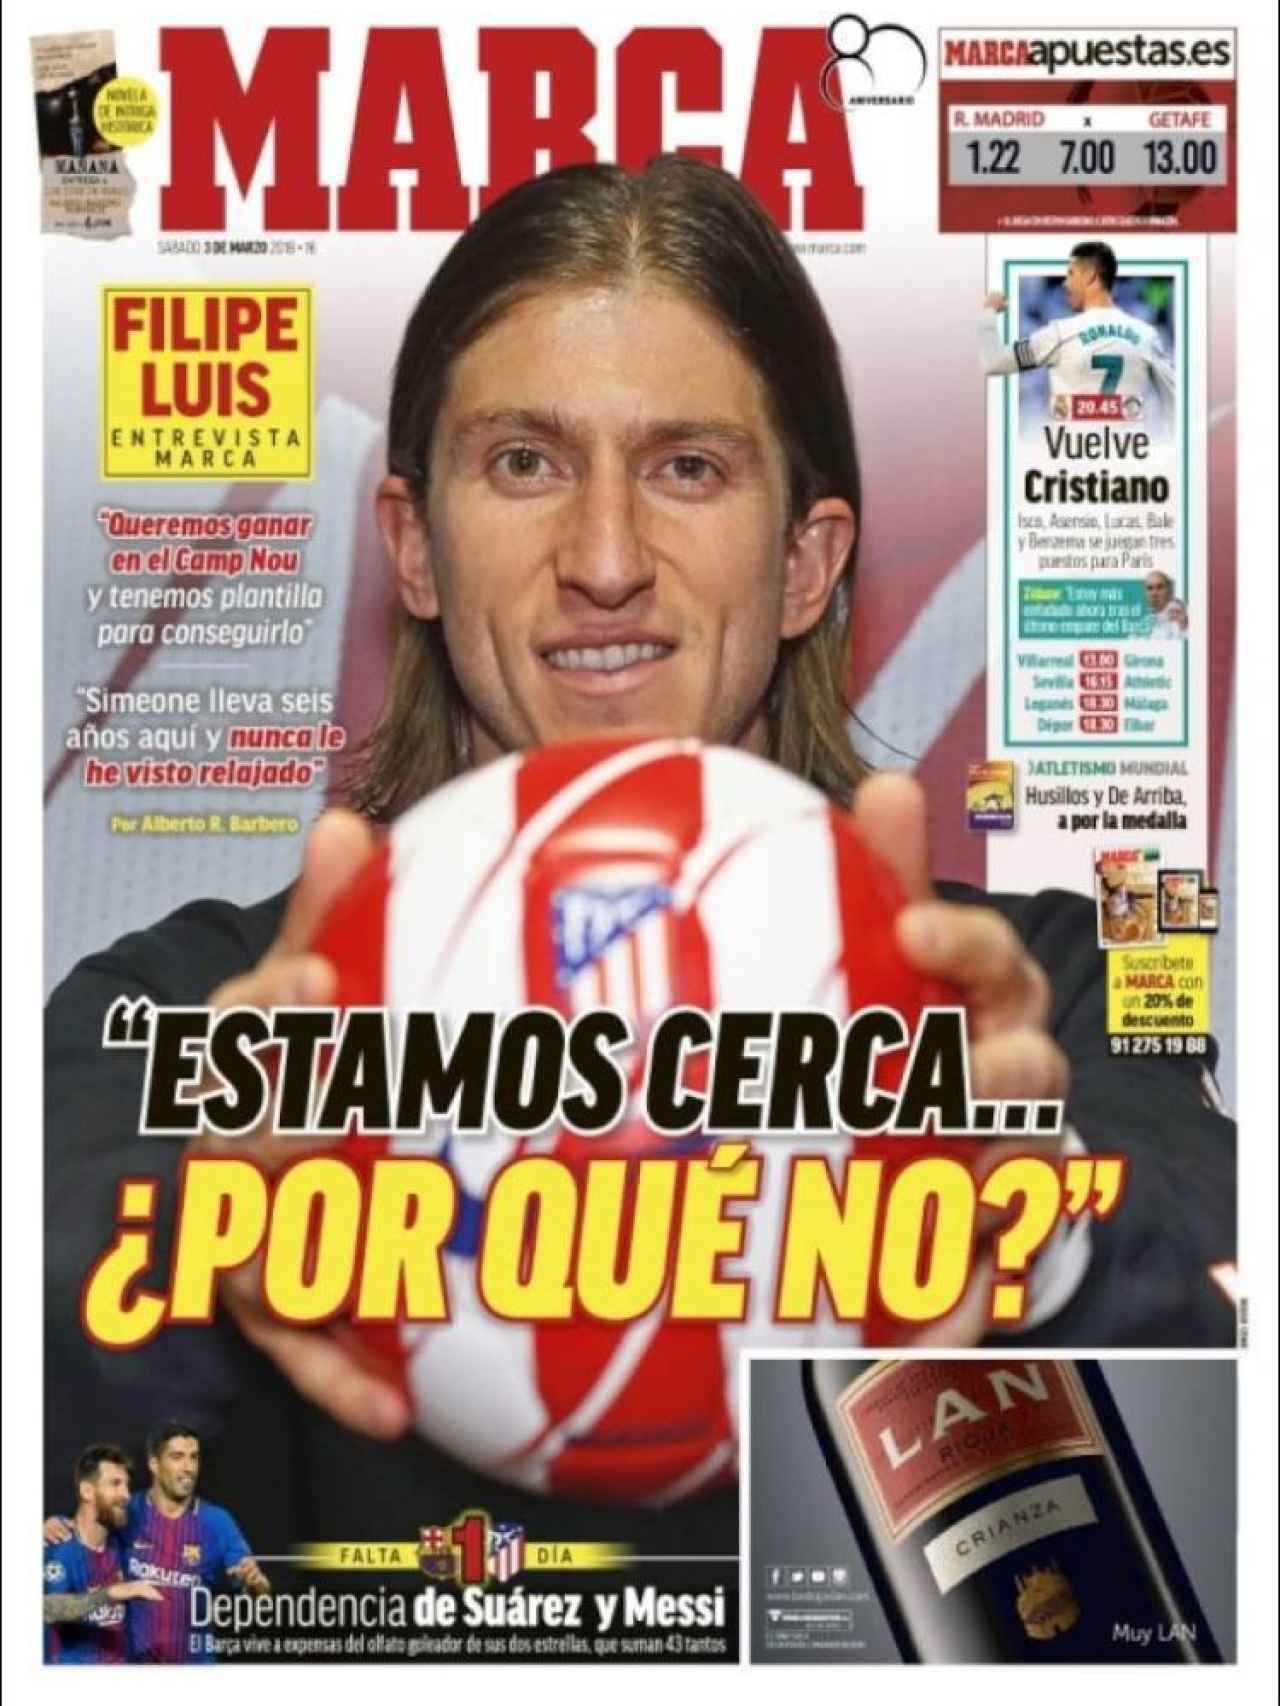 MARCA lleva a su portada una entrevista con Filipe Luis, jugador del Atlético de Madrid.